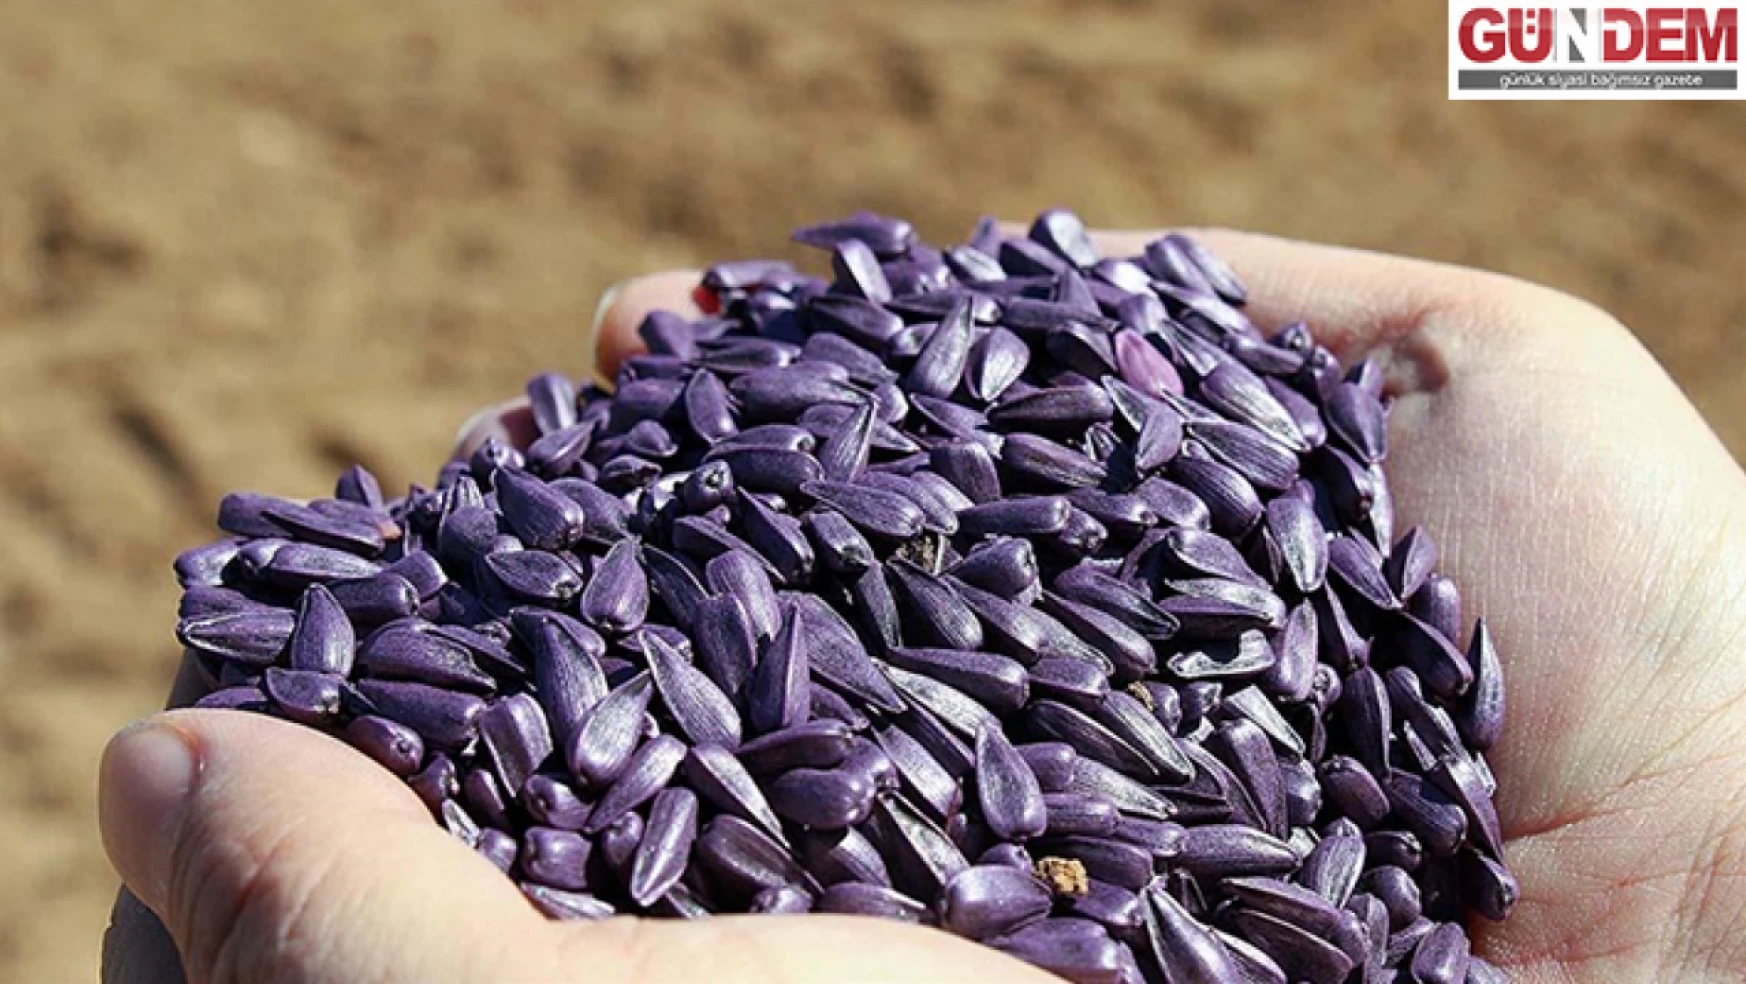 Edirne'de üreticilere yüzde 75 hibeli ayçiçeği tohumu dağıtılacak